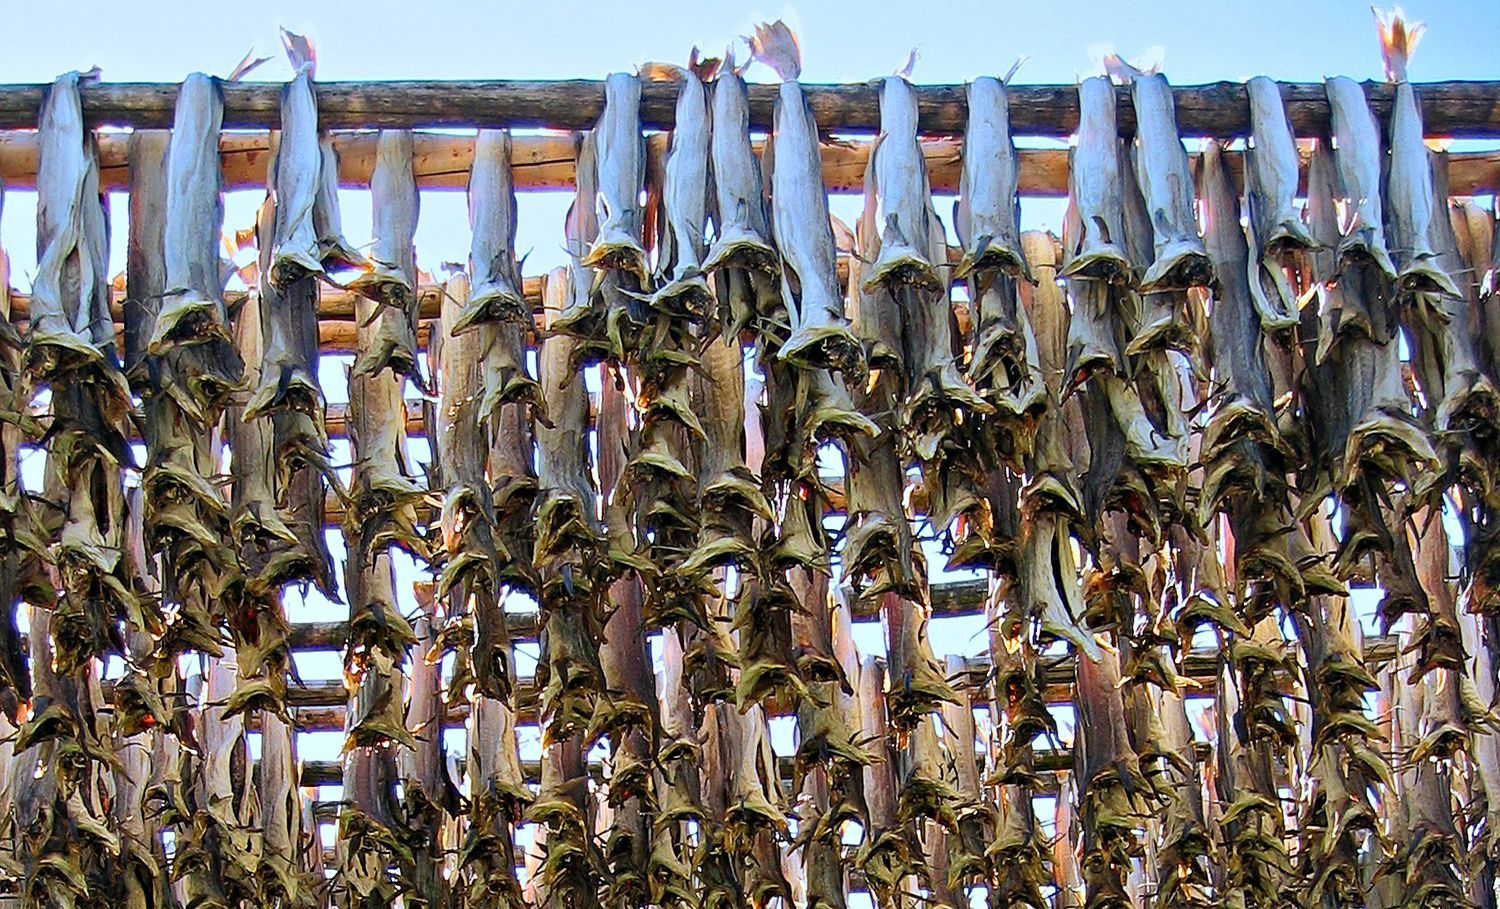 Stockfish drying process